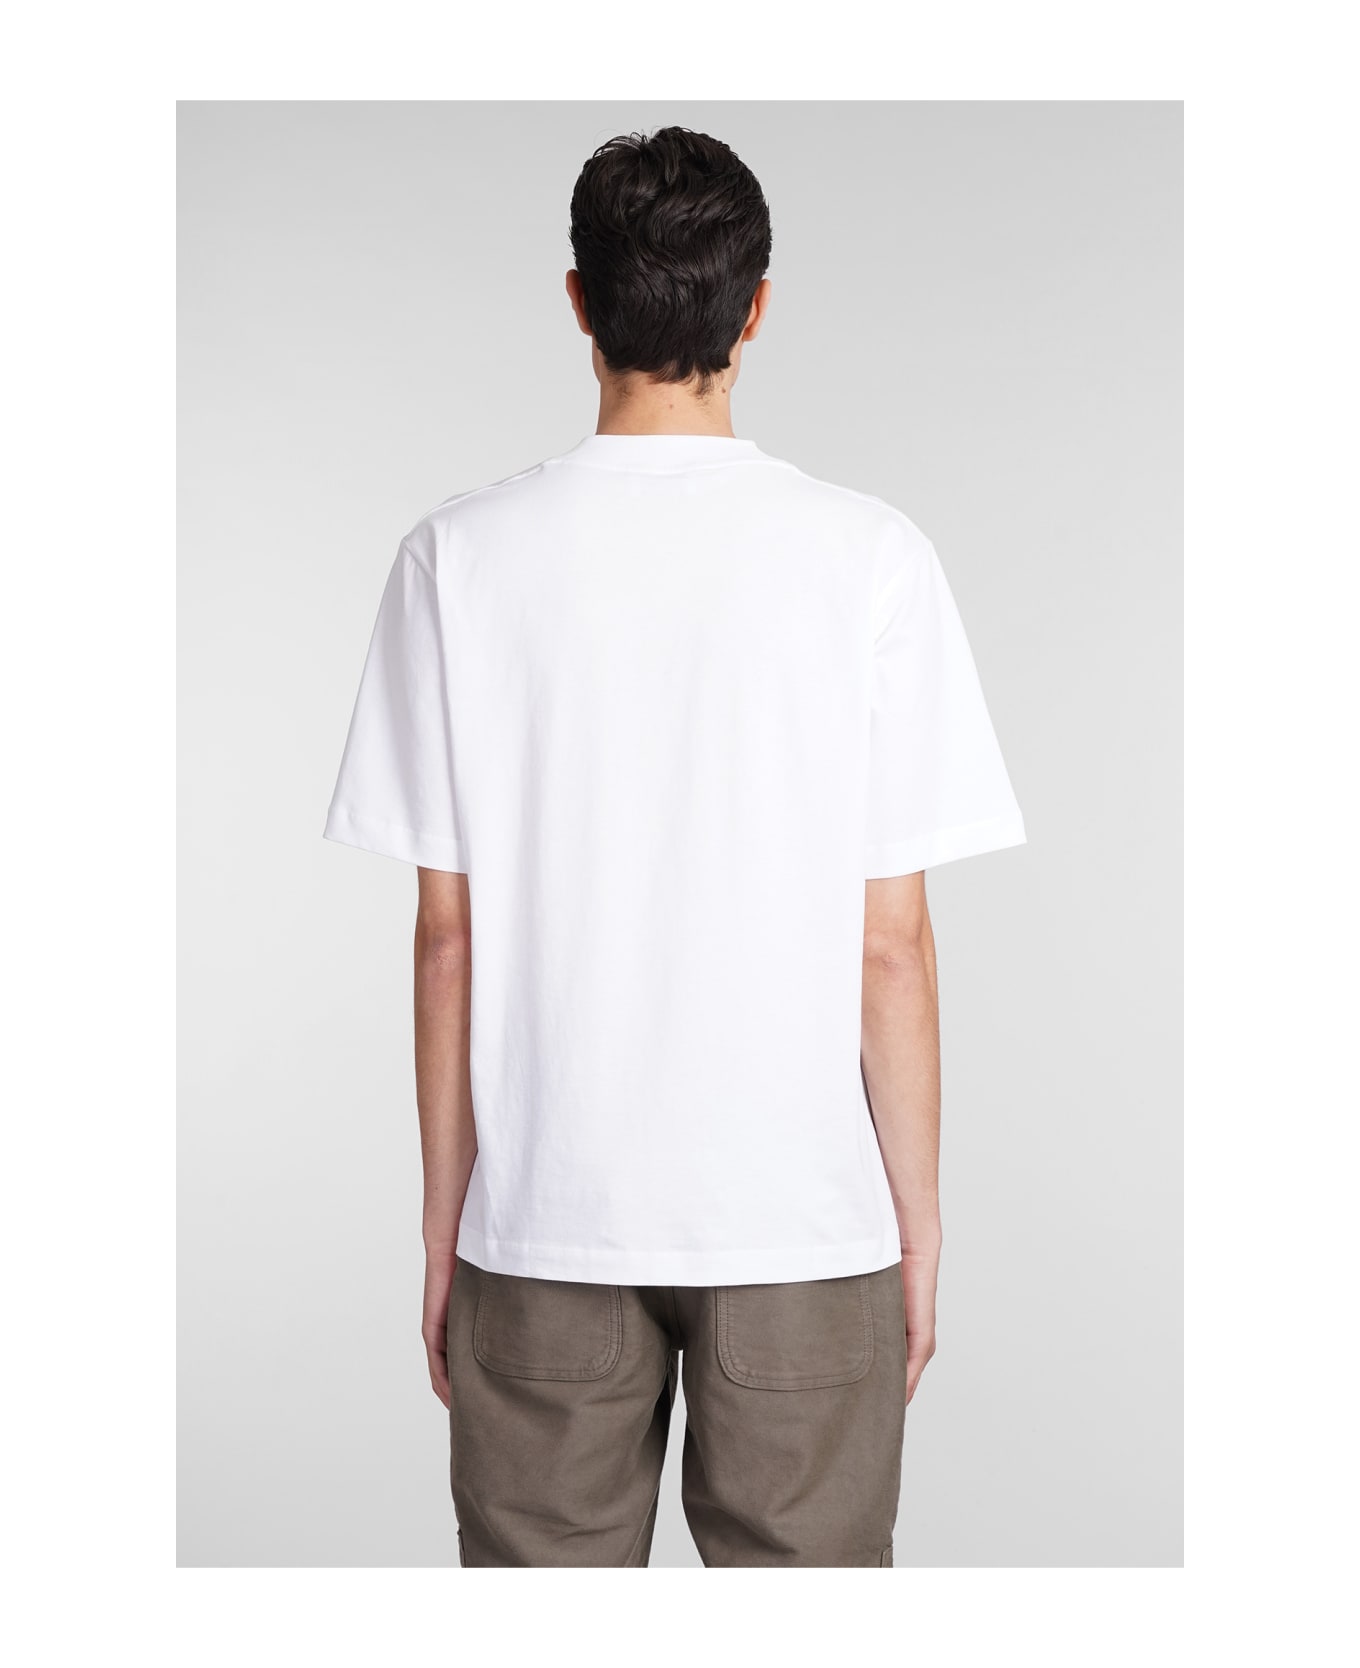 Études T-shirt In White Cotton - white シャツ